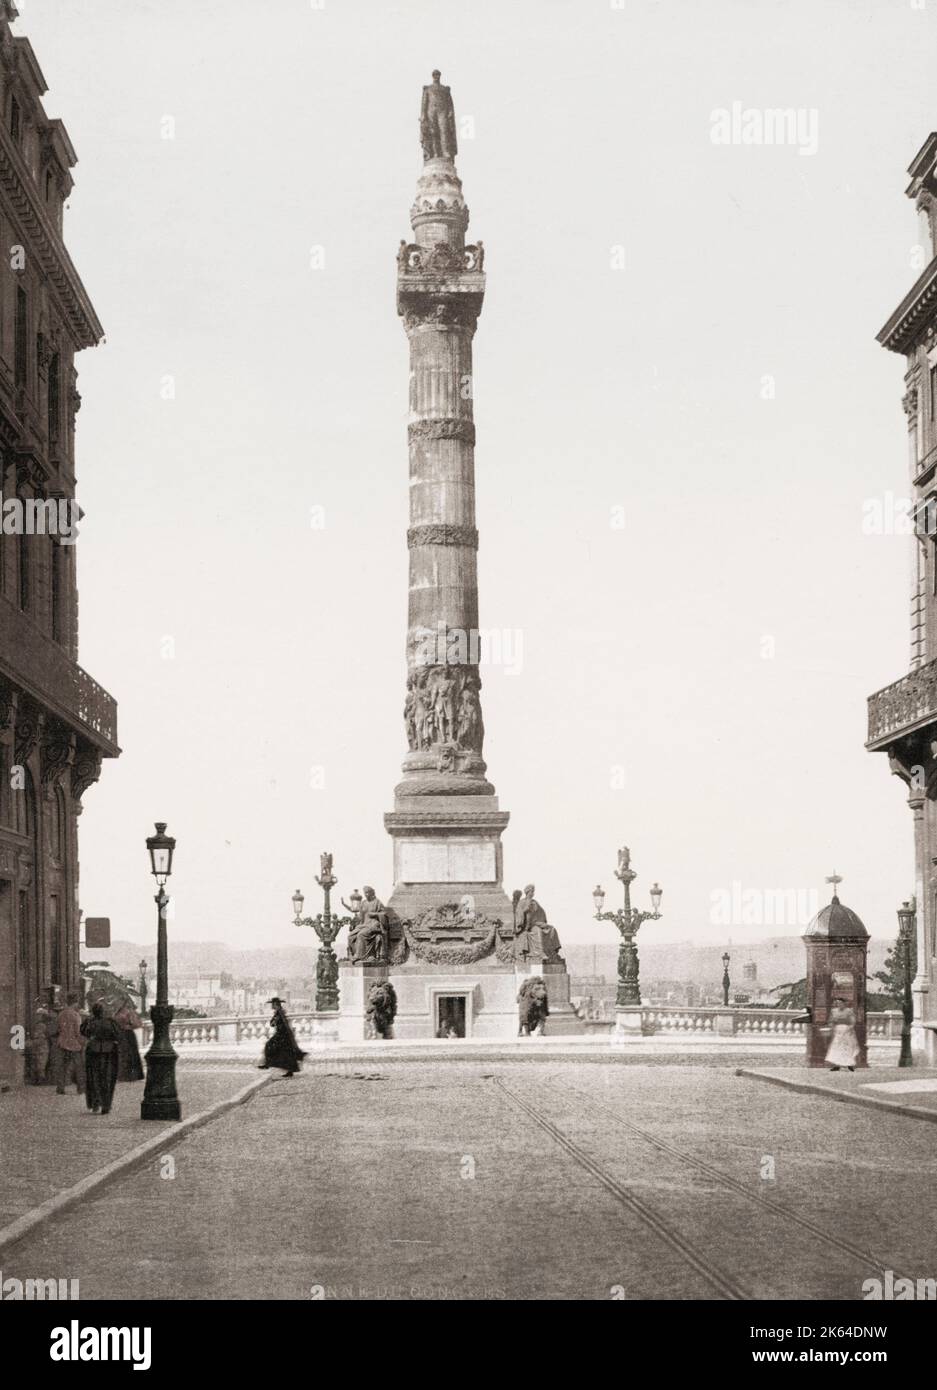 Oldtimer-Fotografie aus dem 19. Jahrhundert: Die Kongresssäule ist eine monumentale Säule auf dem Place du CongrÃƒÂ¨s/Congresplein in Brüssel, Belgien, die der Schaffung der Verfassung durch den Nationalkongress von 1830-1831 gedenkt Stockfoto